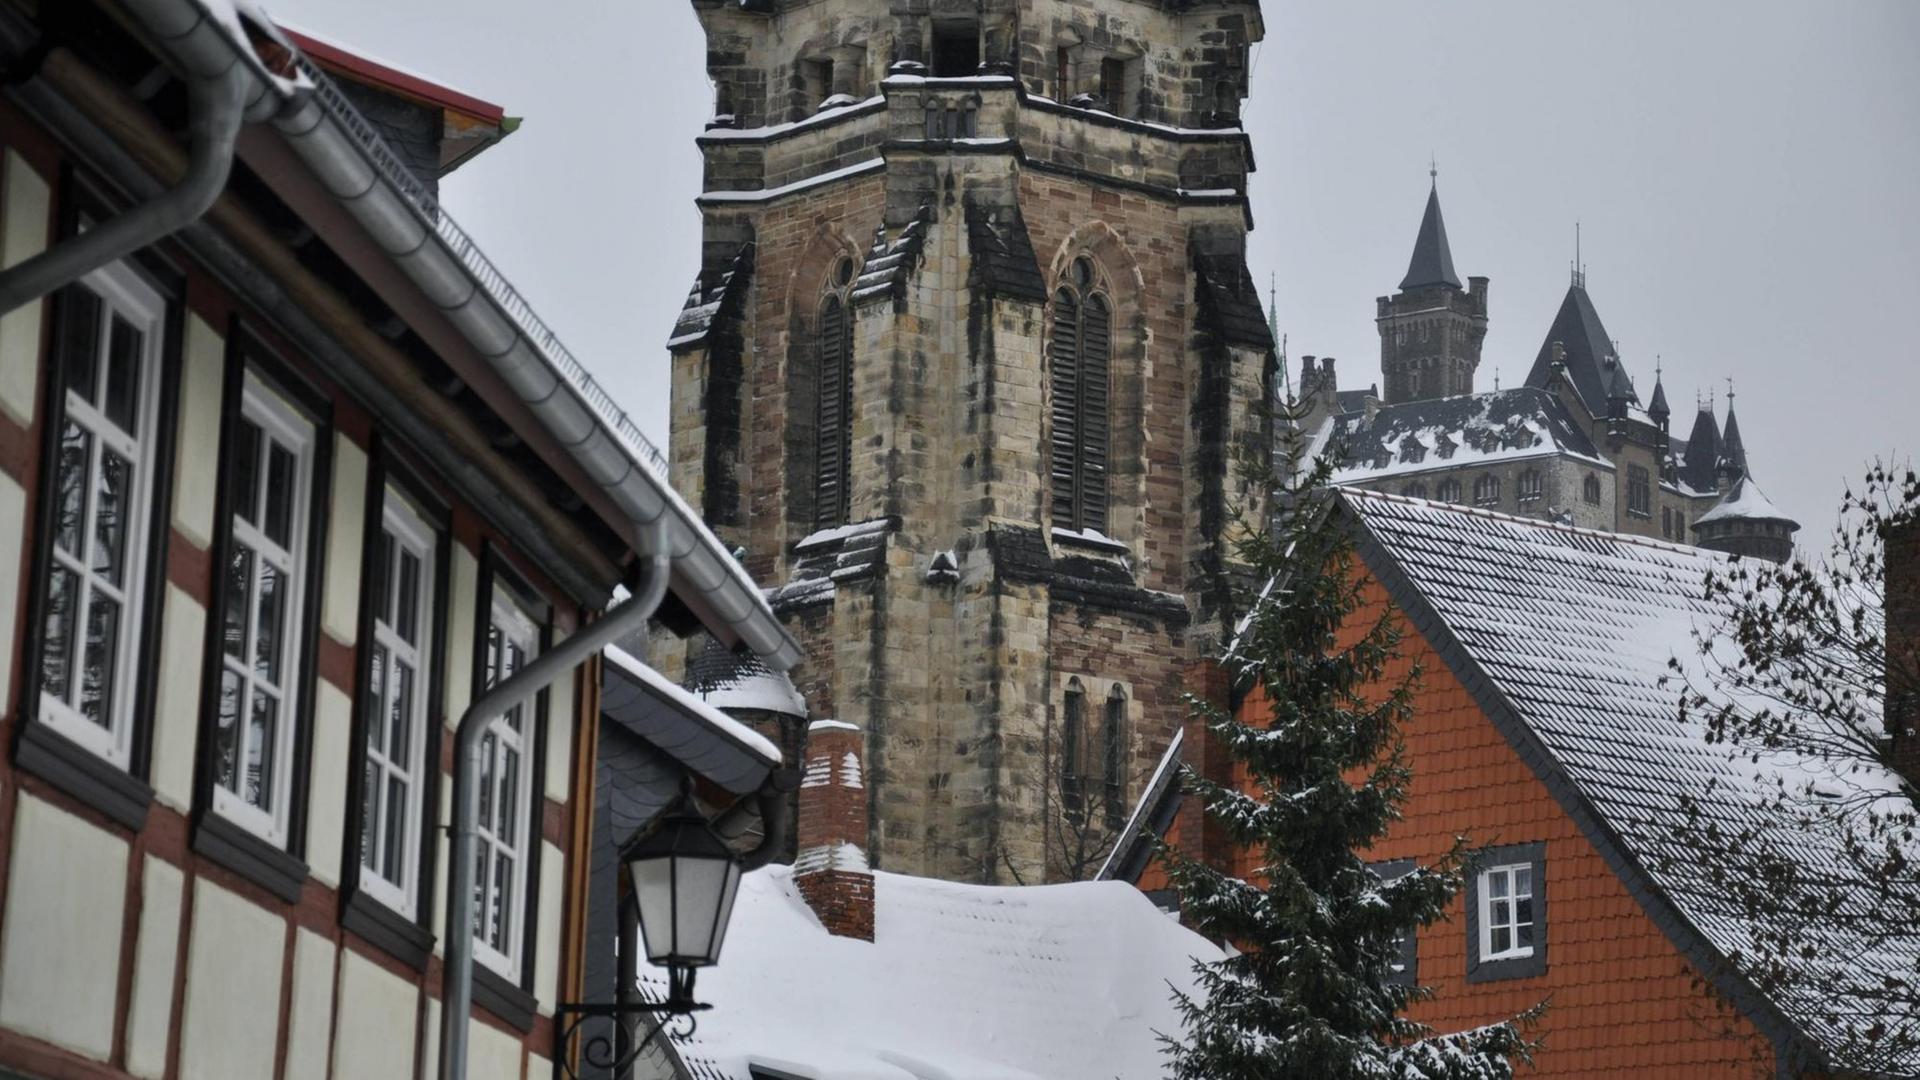 Blick auf Fachwerkhäuser und eine Kirche in Wernigerode im Winter.